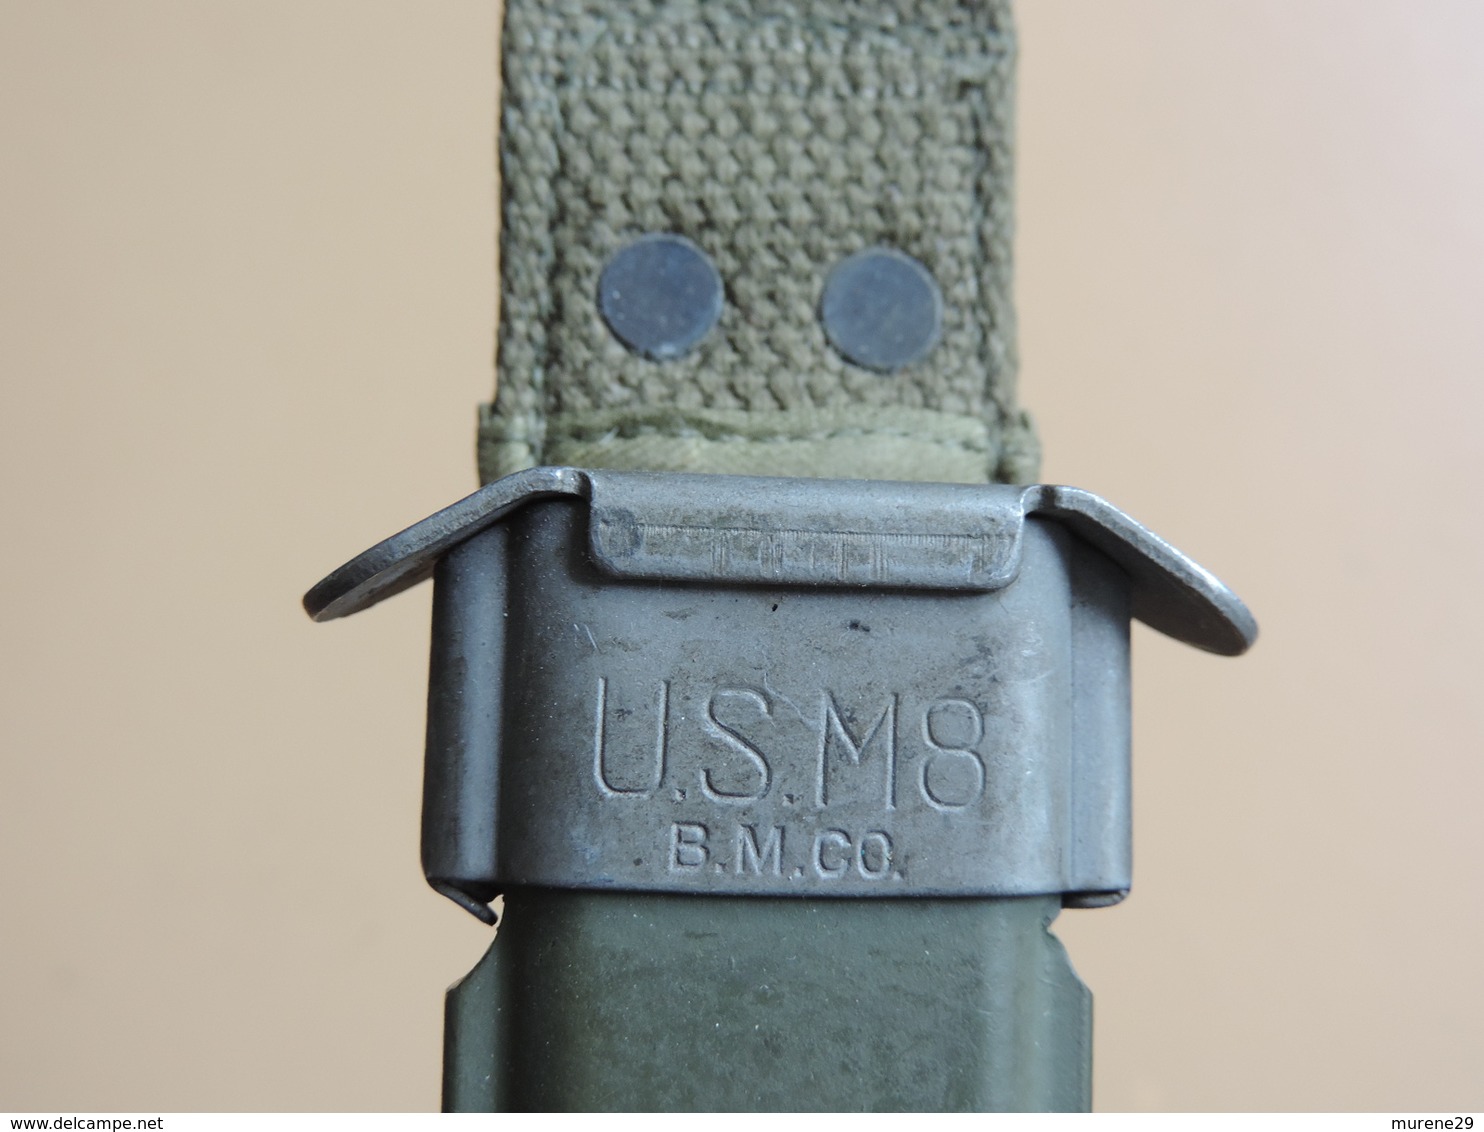 Poignard USM3 IMPERIAL avec marquage sur la garde, quasi neuf, US WW2.